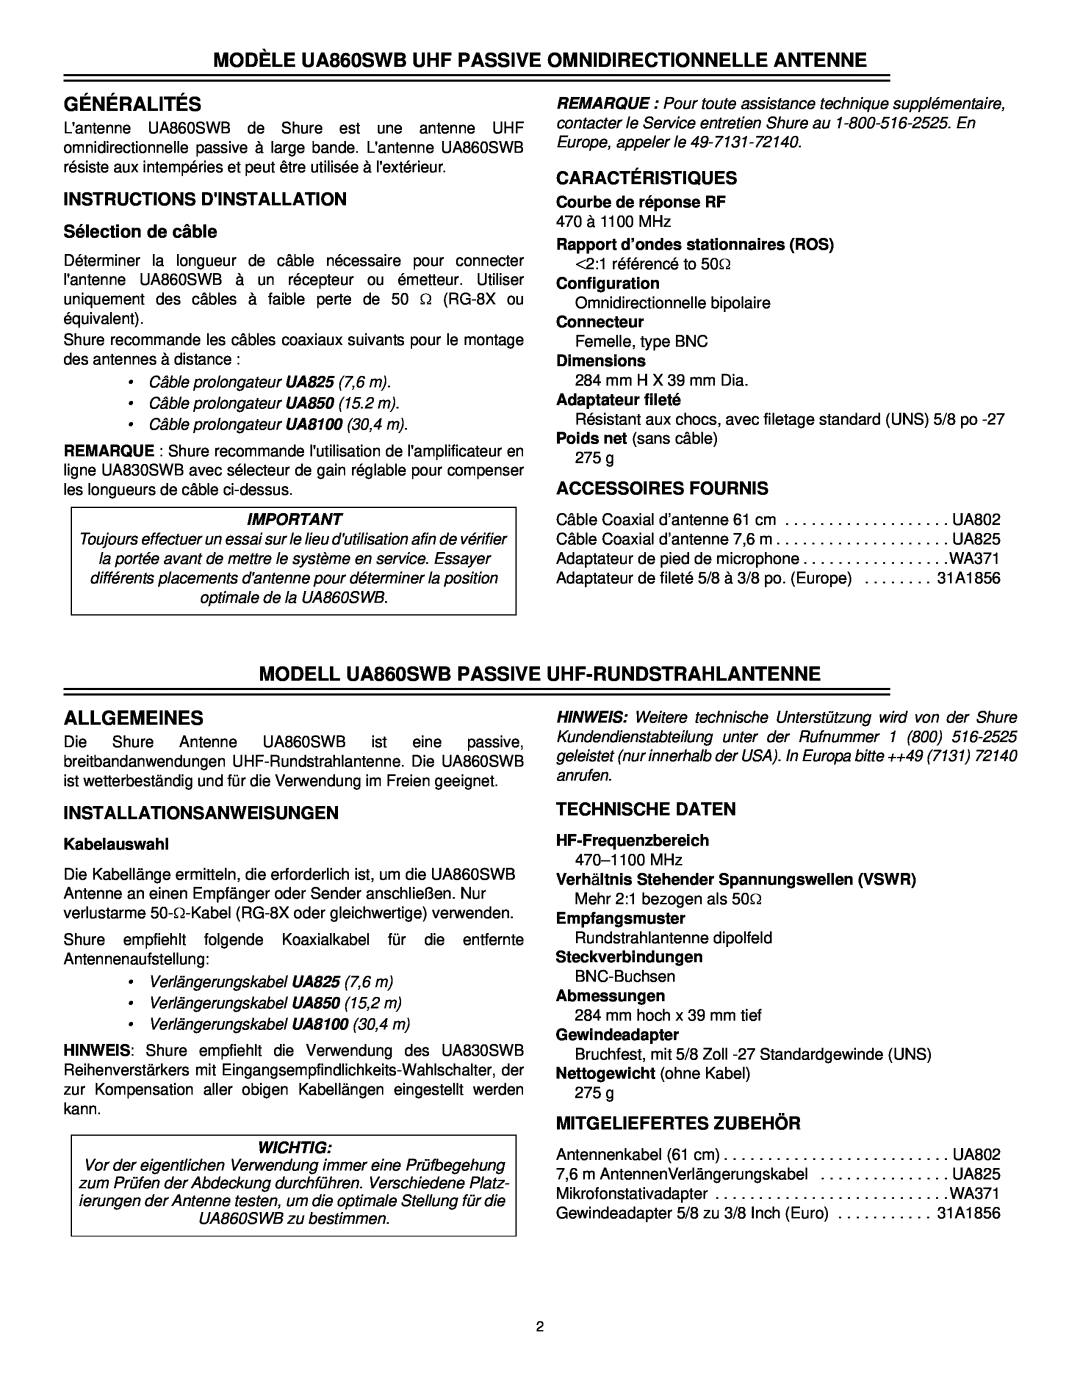 Shure Généralités, MODELL UA860SWB PASSIVE UHF-RUNDSTRAHLANTENNE, Allgemeines, Caractéristiques, Accessoires Fournis 